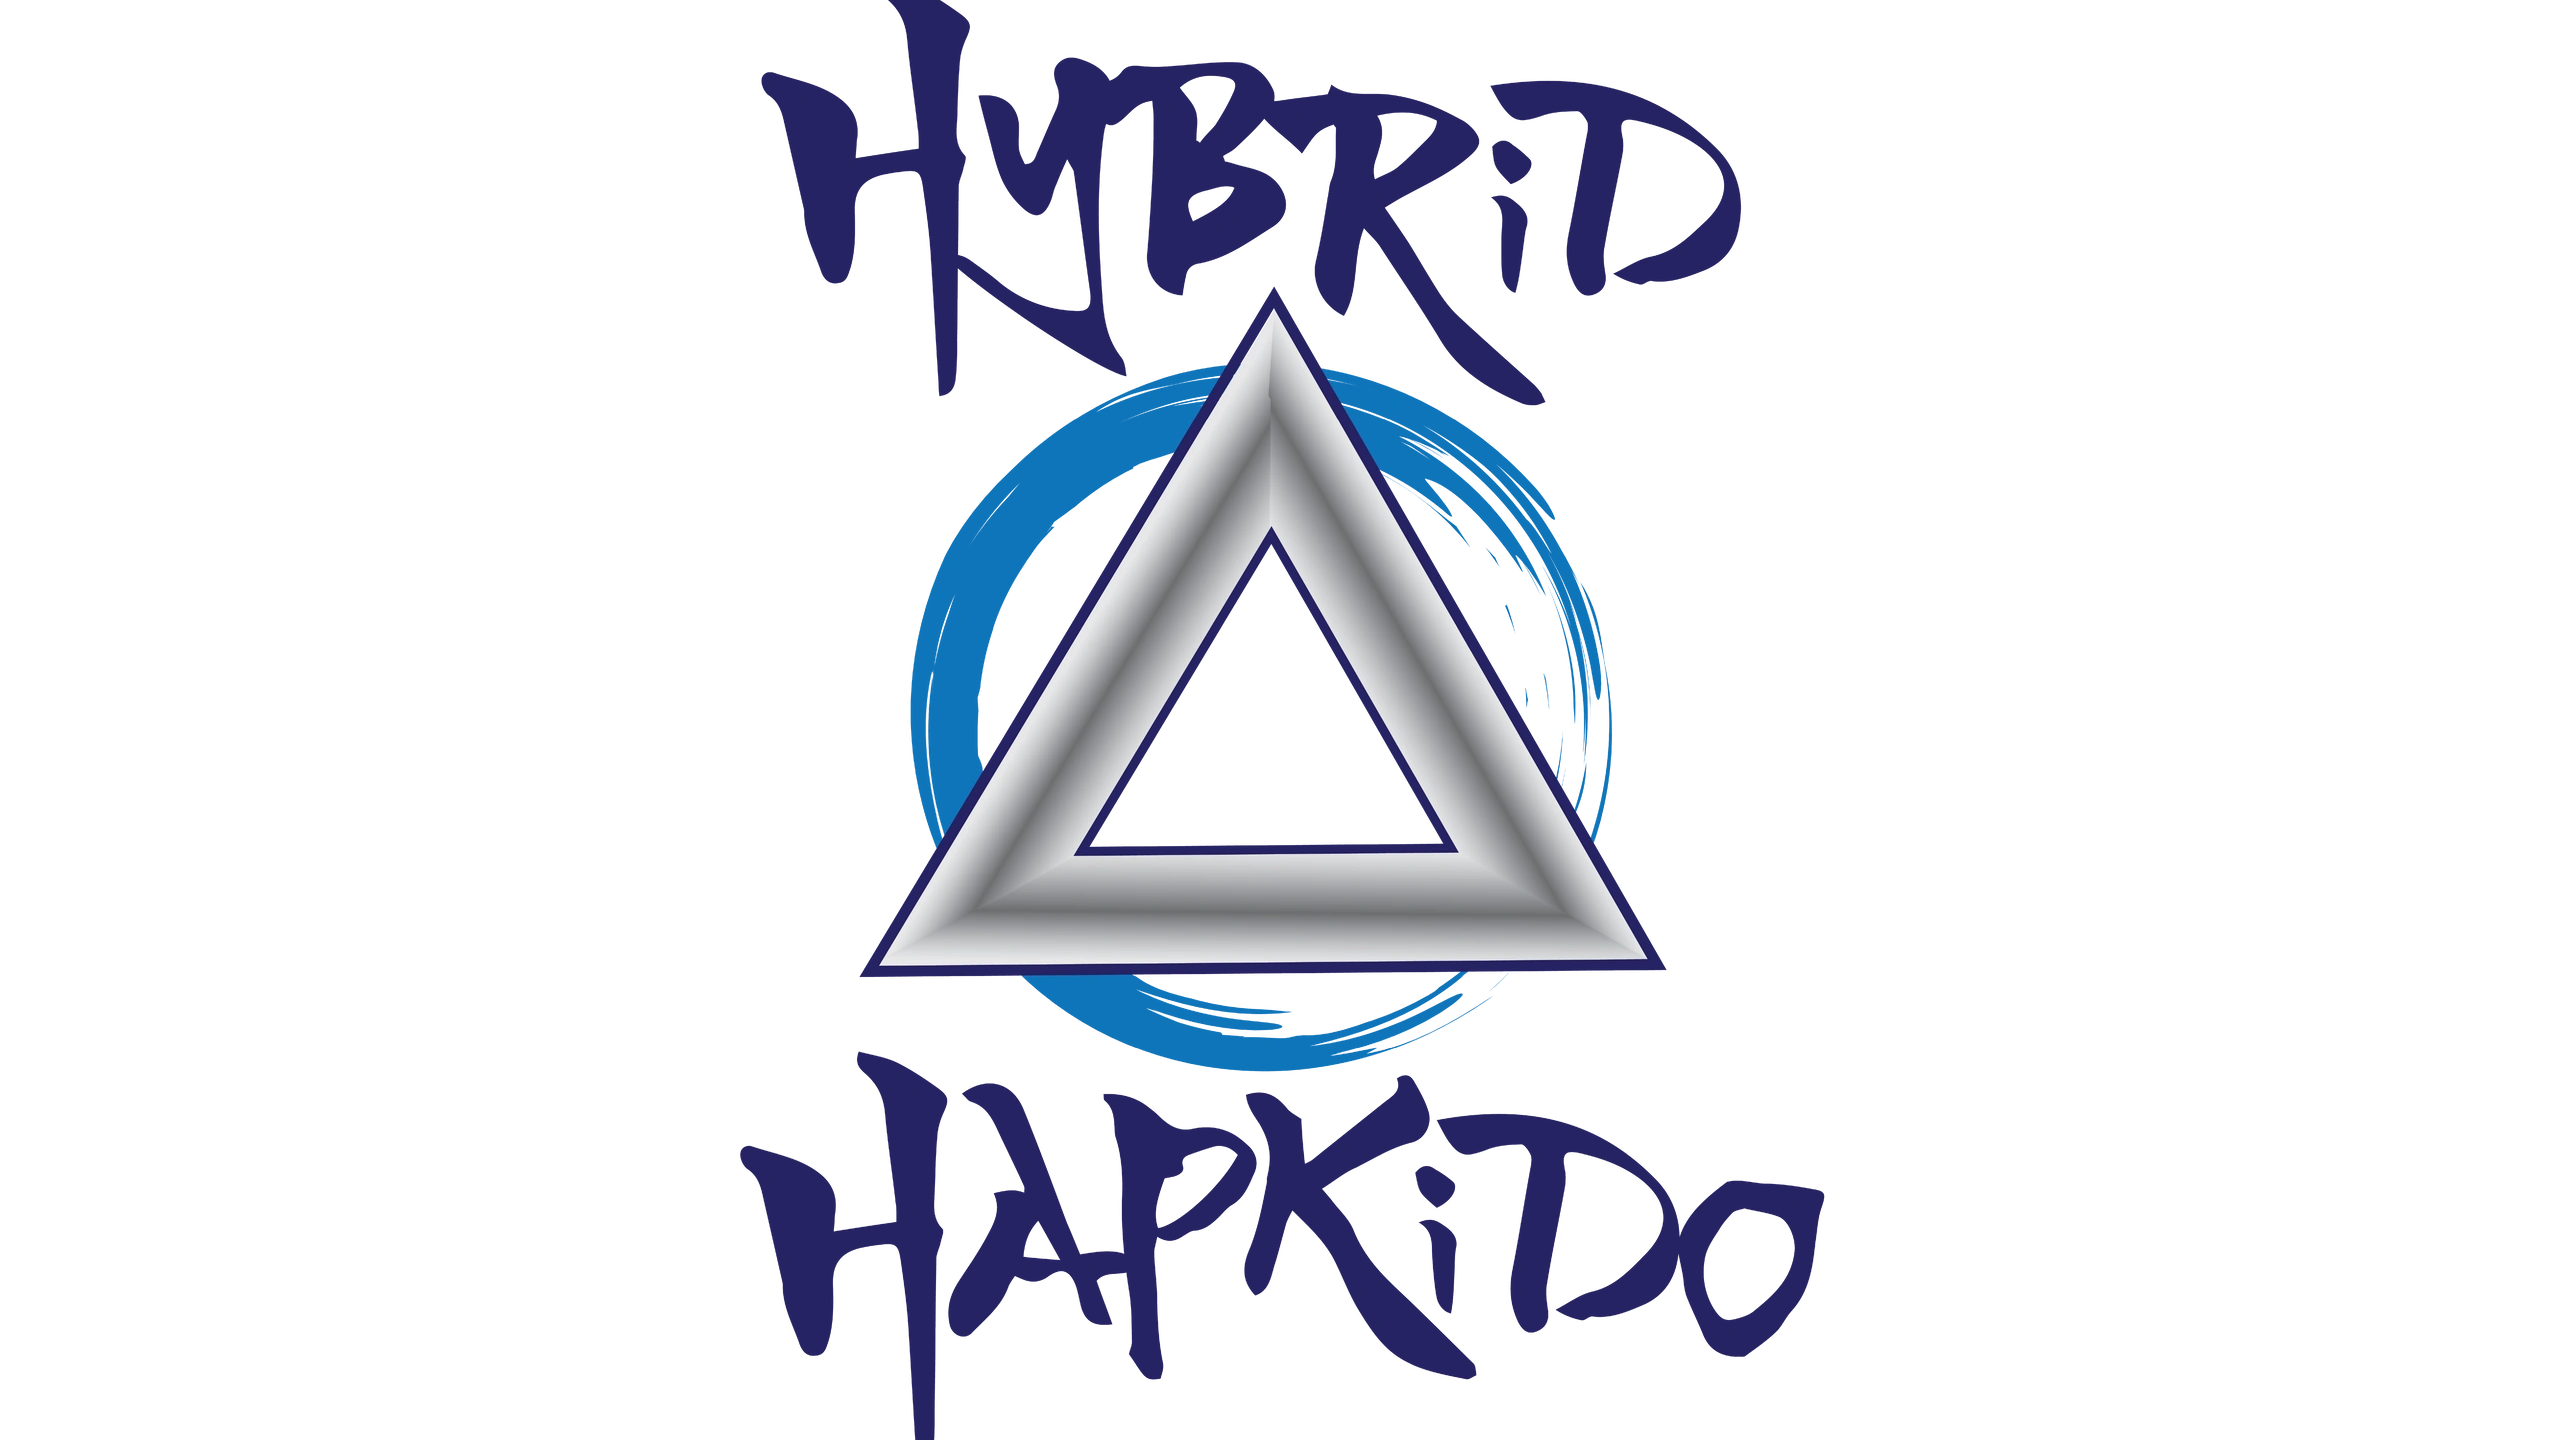 (c) Hybridhapkido.com